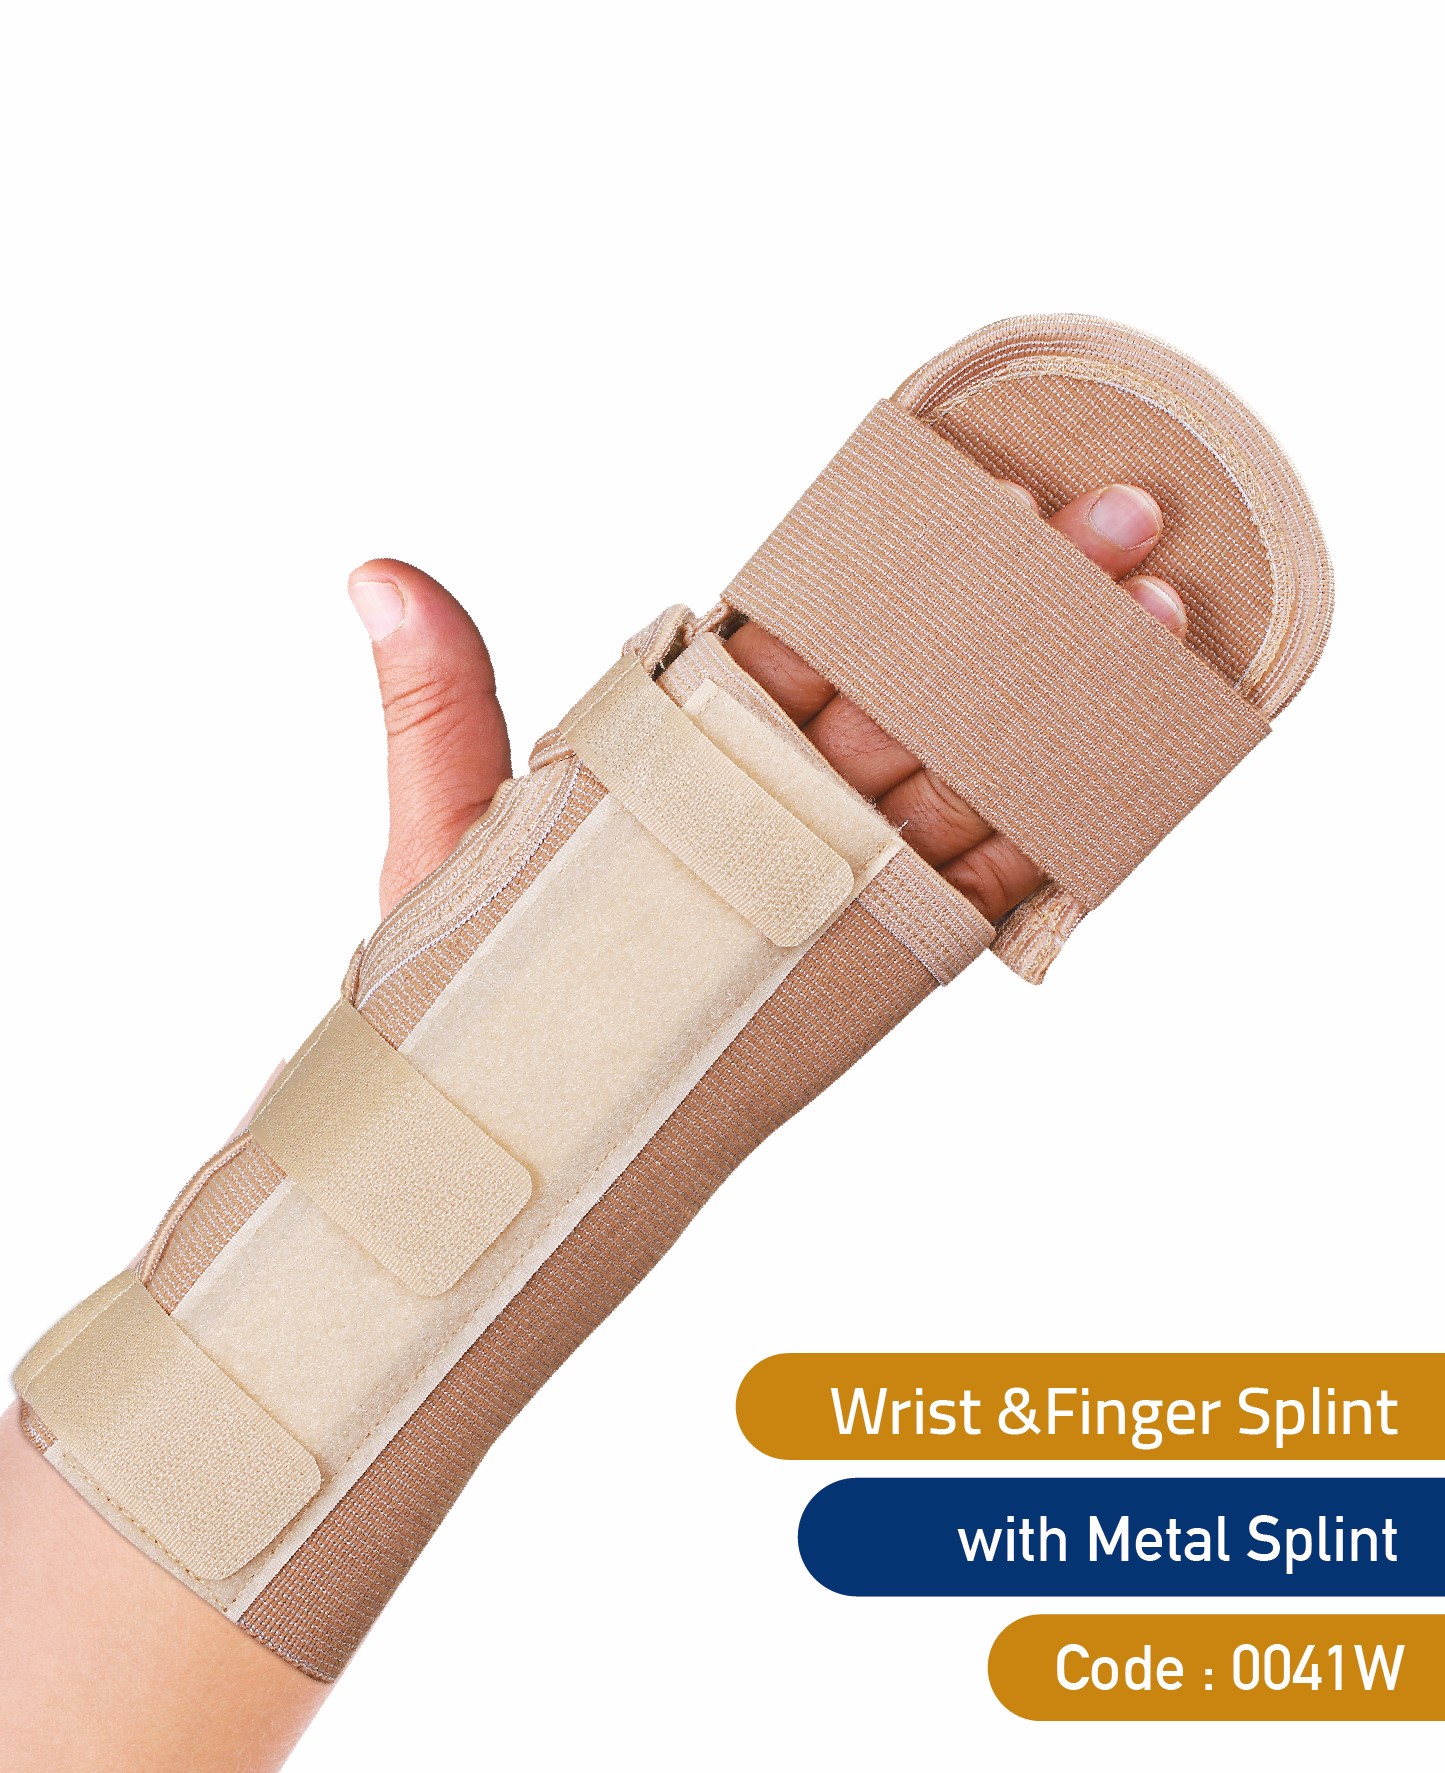 Wrist & Finger Splint